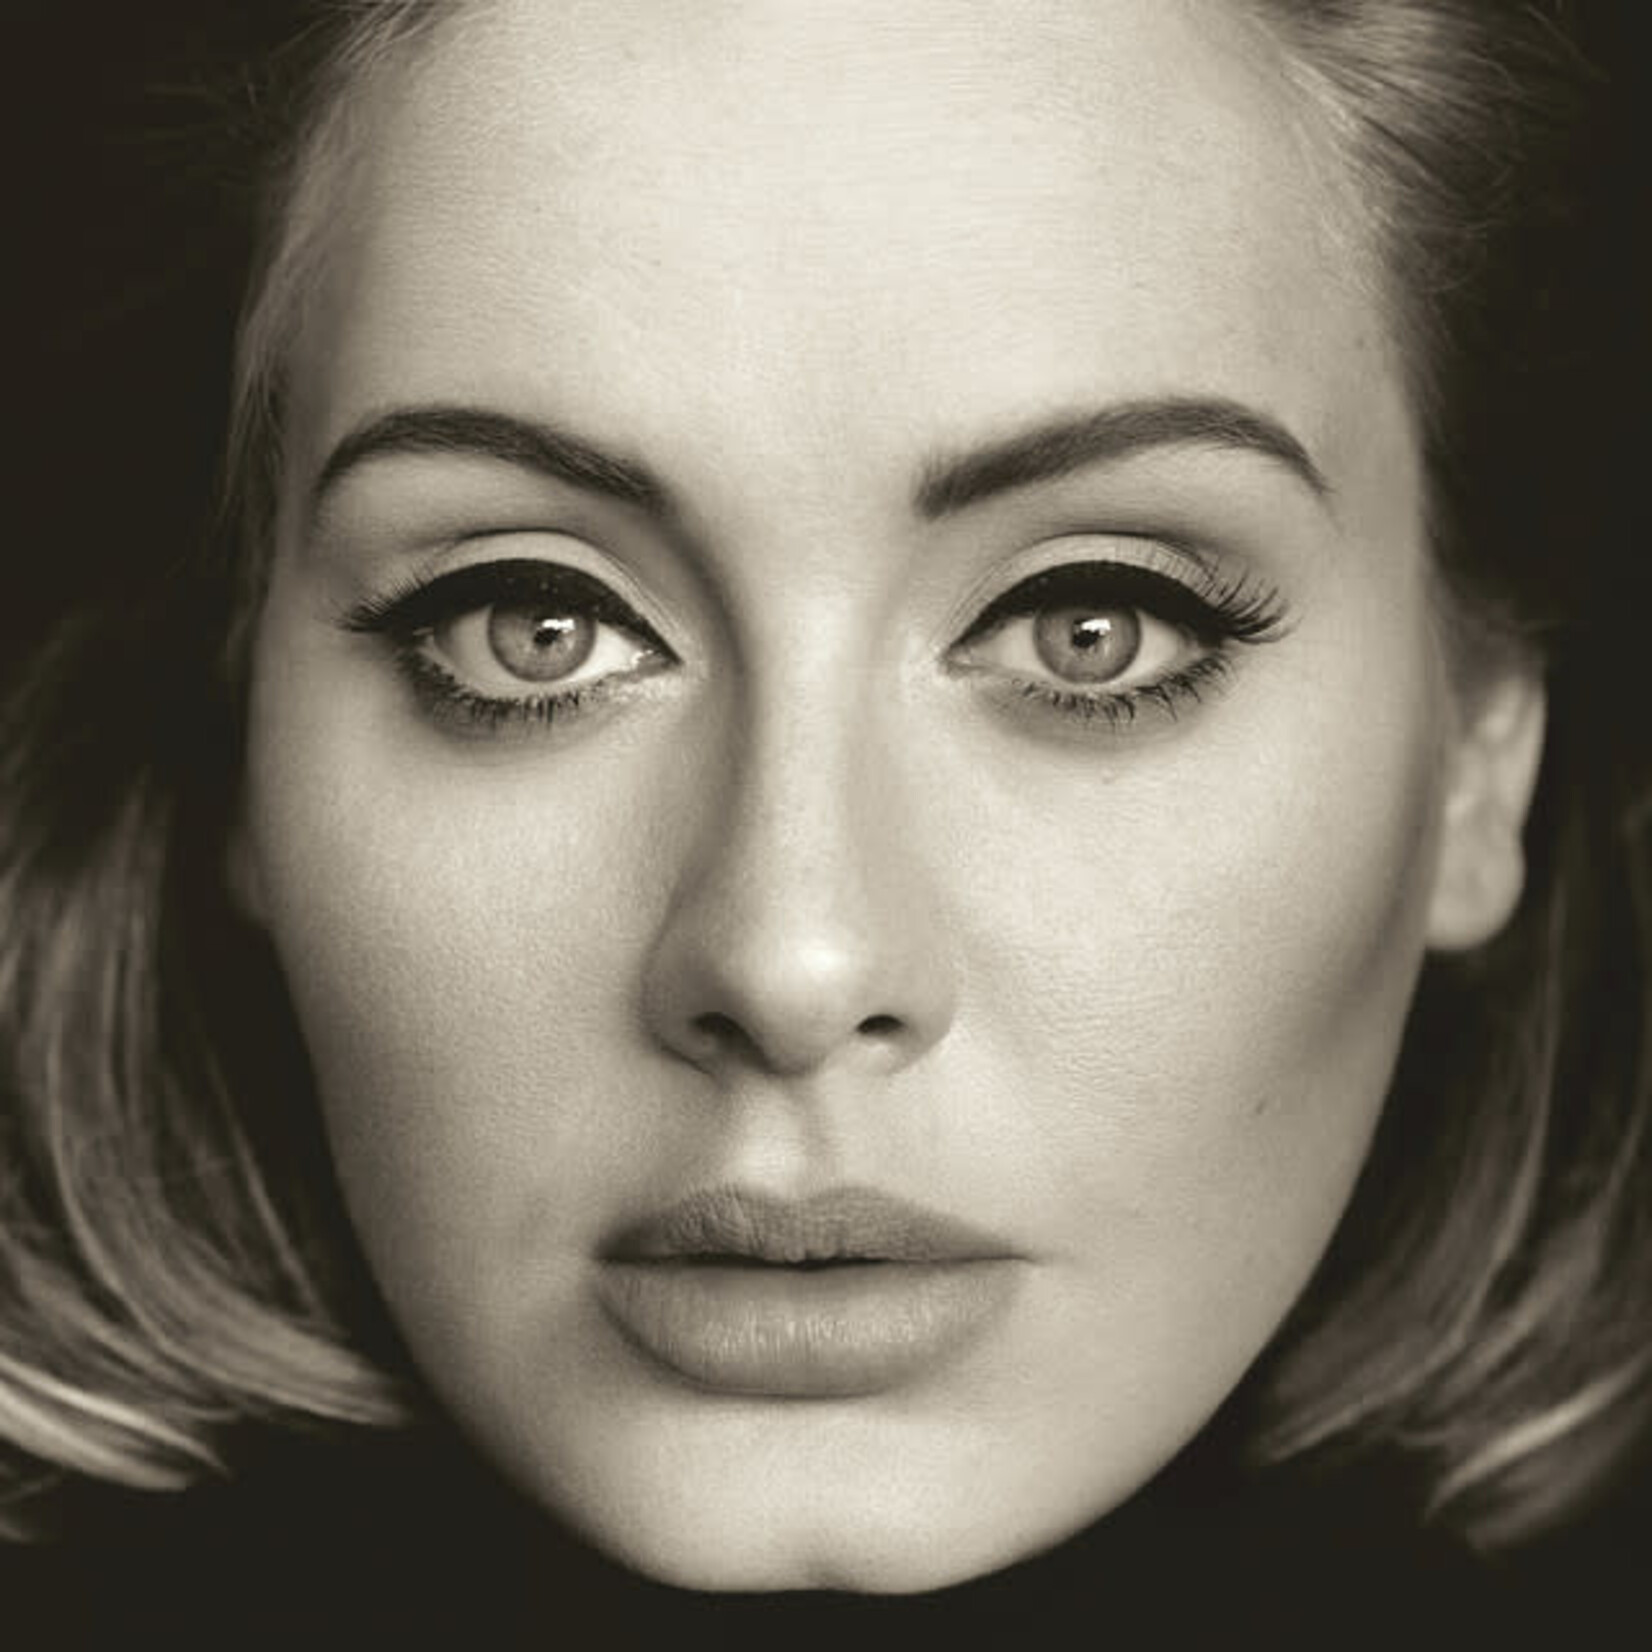 Adele - 25 [CD]